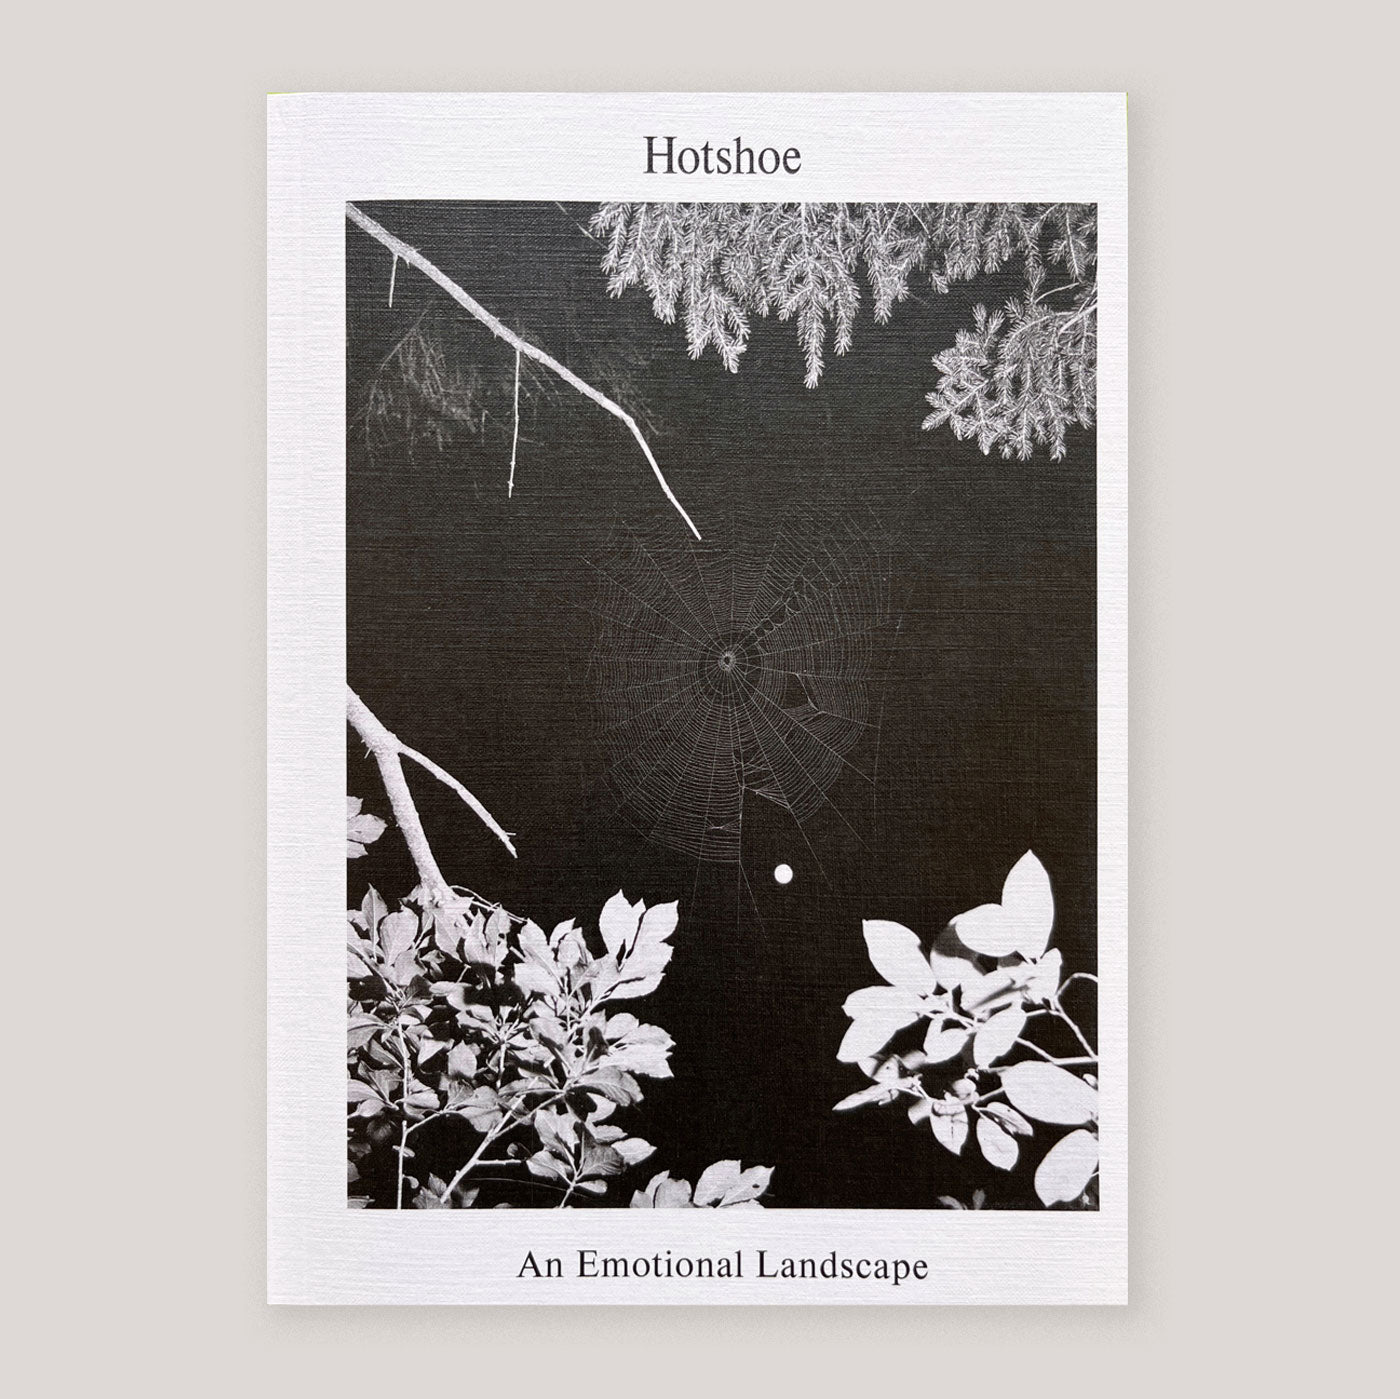 Hotshoe Magazine #209 | An Emotional Landscape